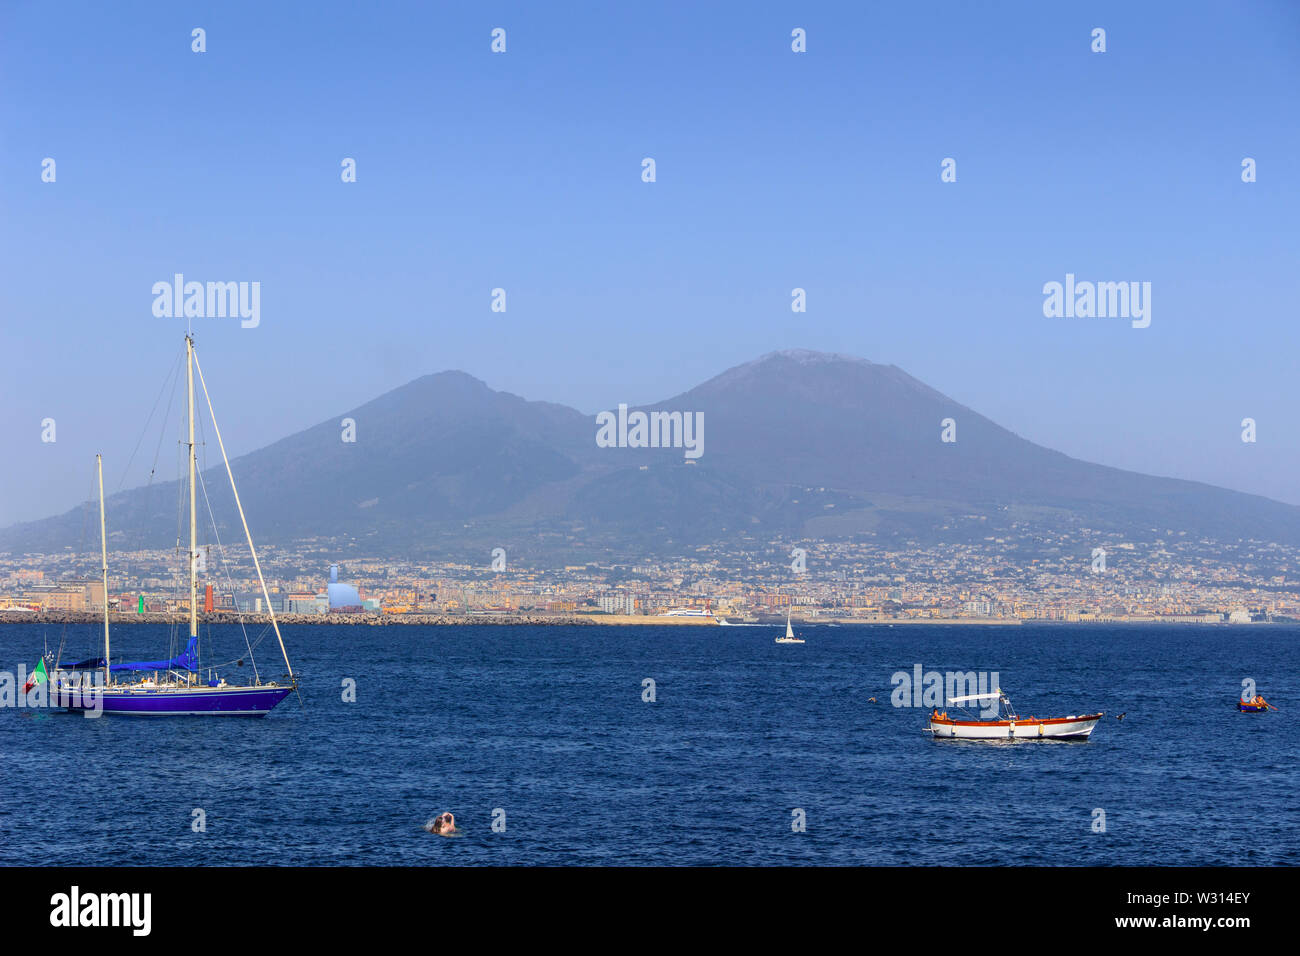 Blick auf den Vesuv und den Golf von Neapel gesehen vom Hafen, Italien. Stockfoto